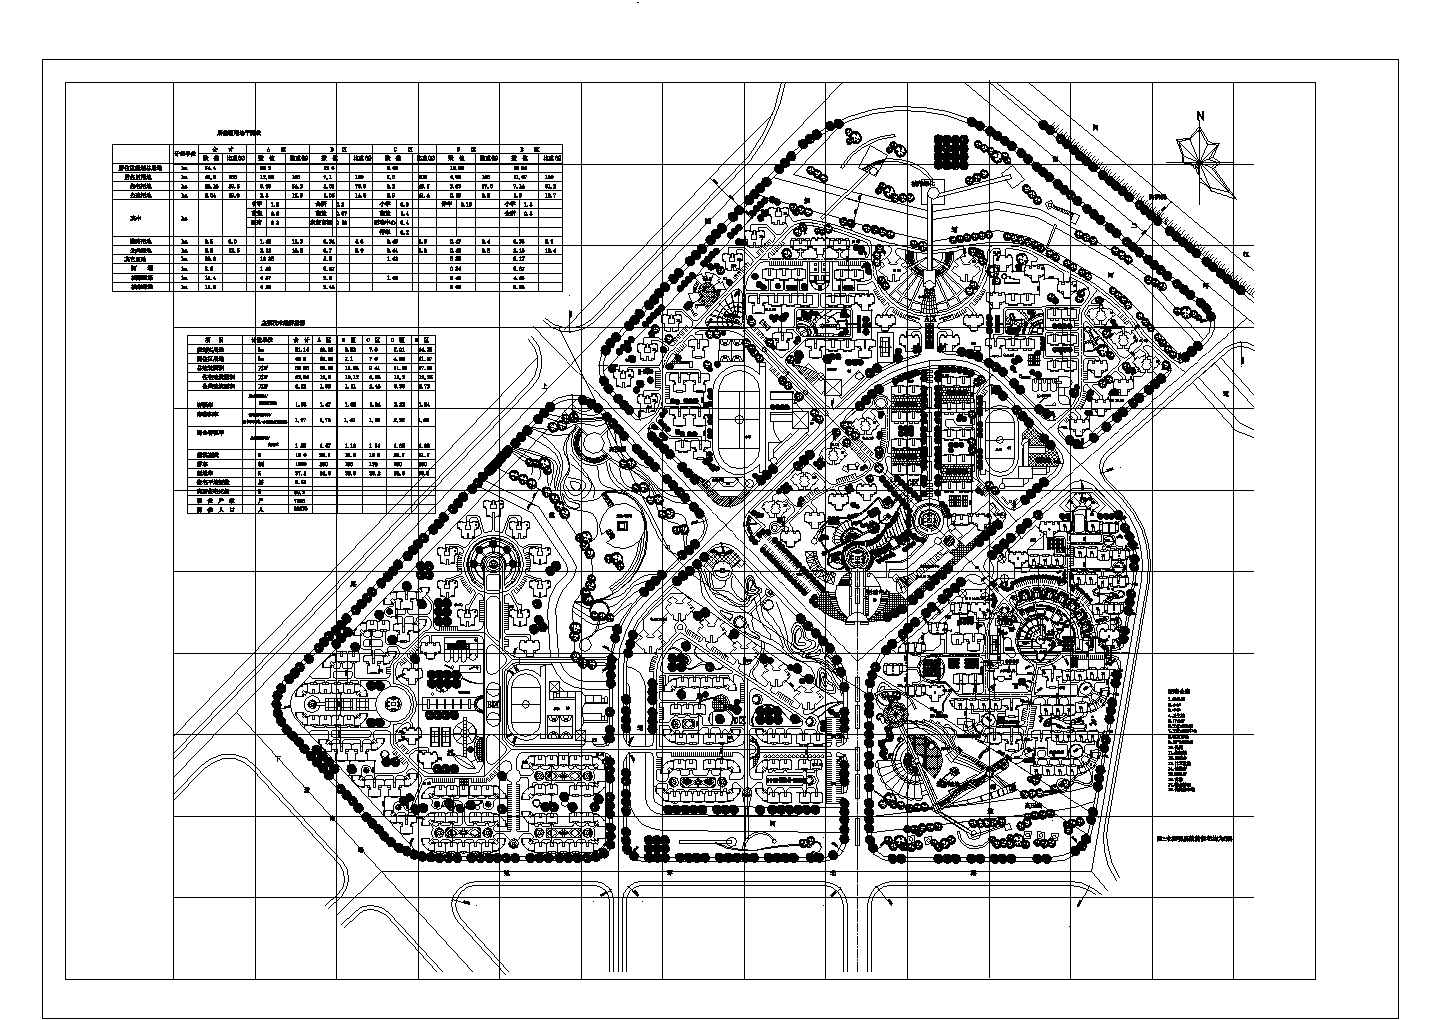 居住区规划总用地74.4ha综合小区总平面图